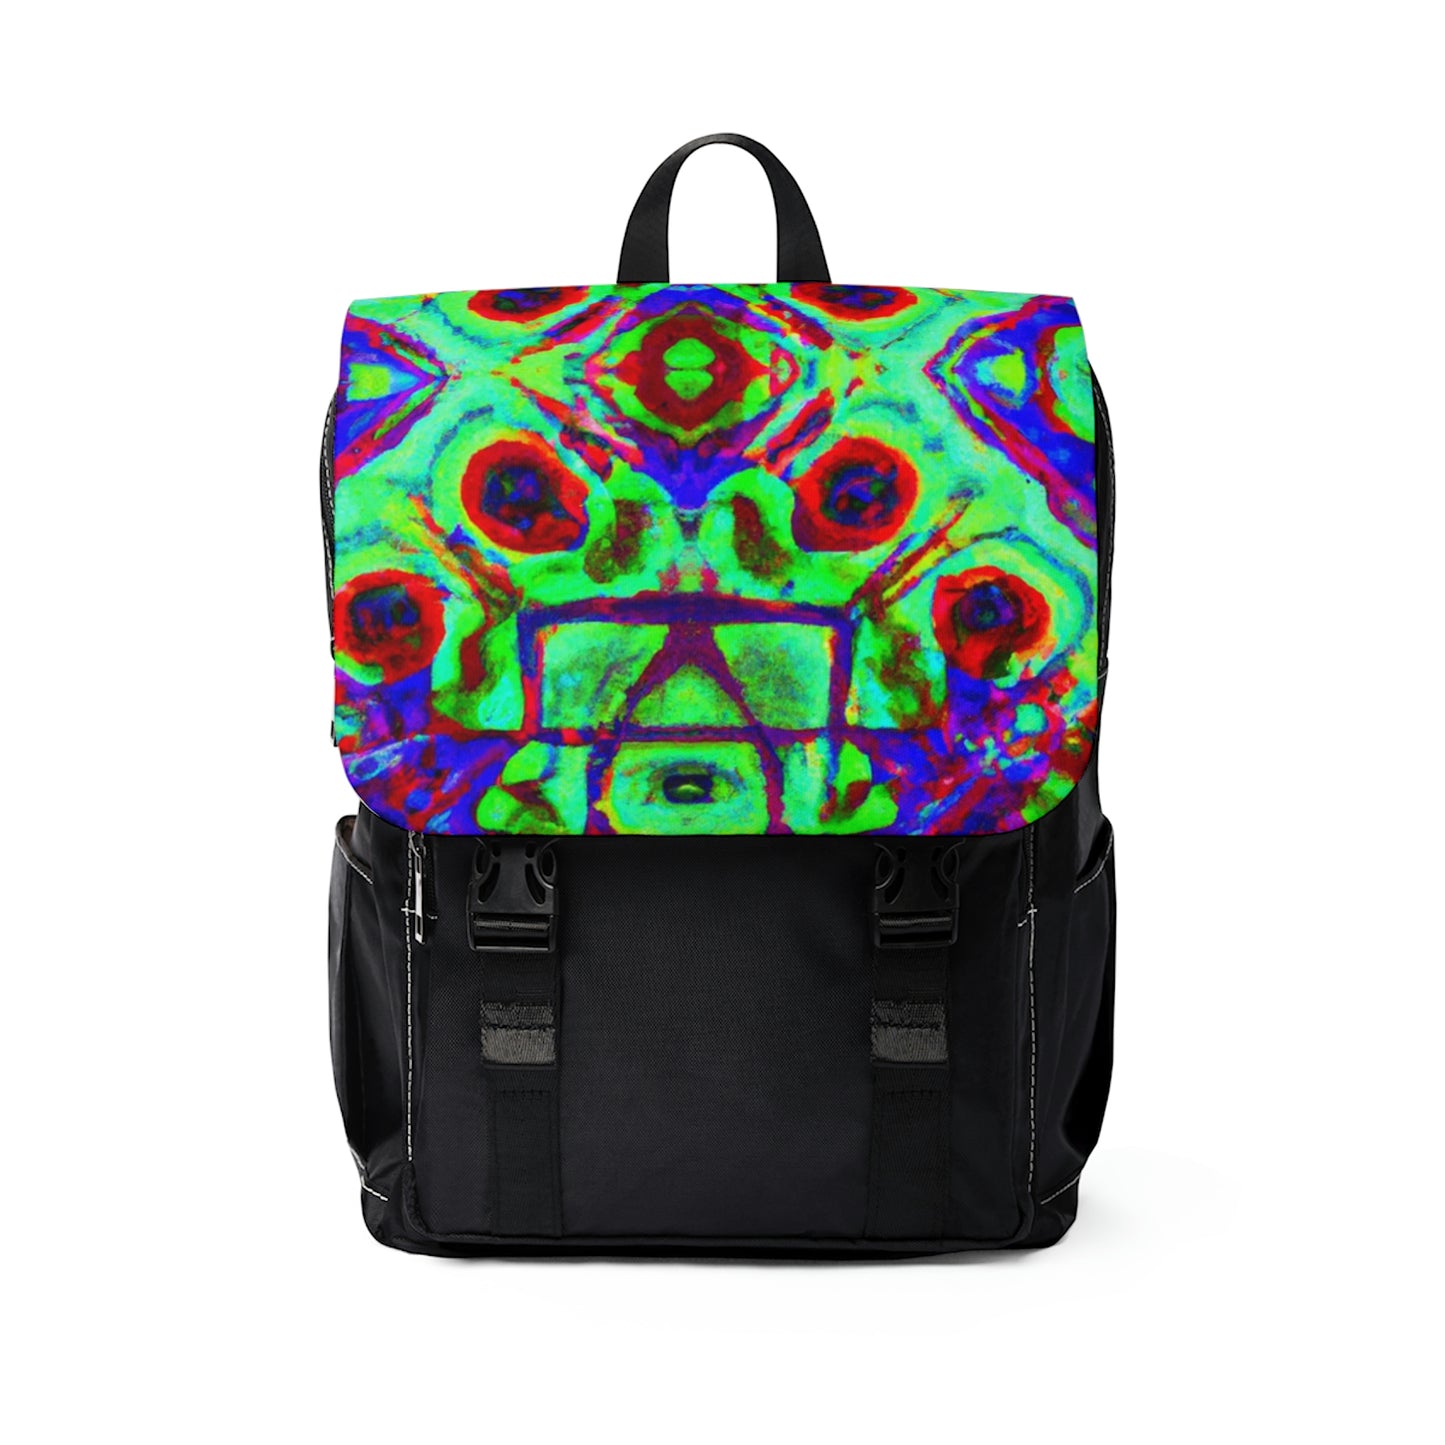 Gianaris - Psychedelic Shoulder Travel Backpack Bag